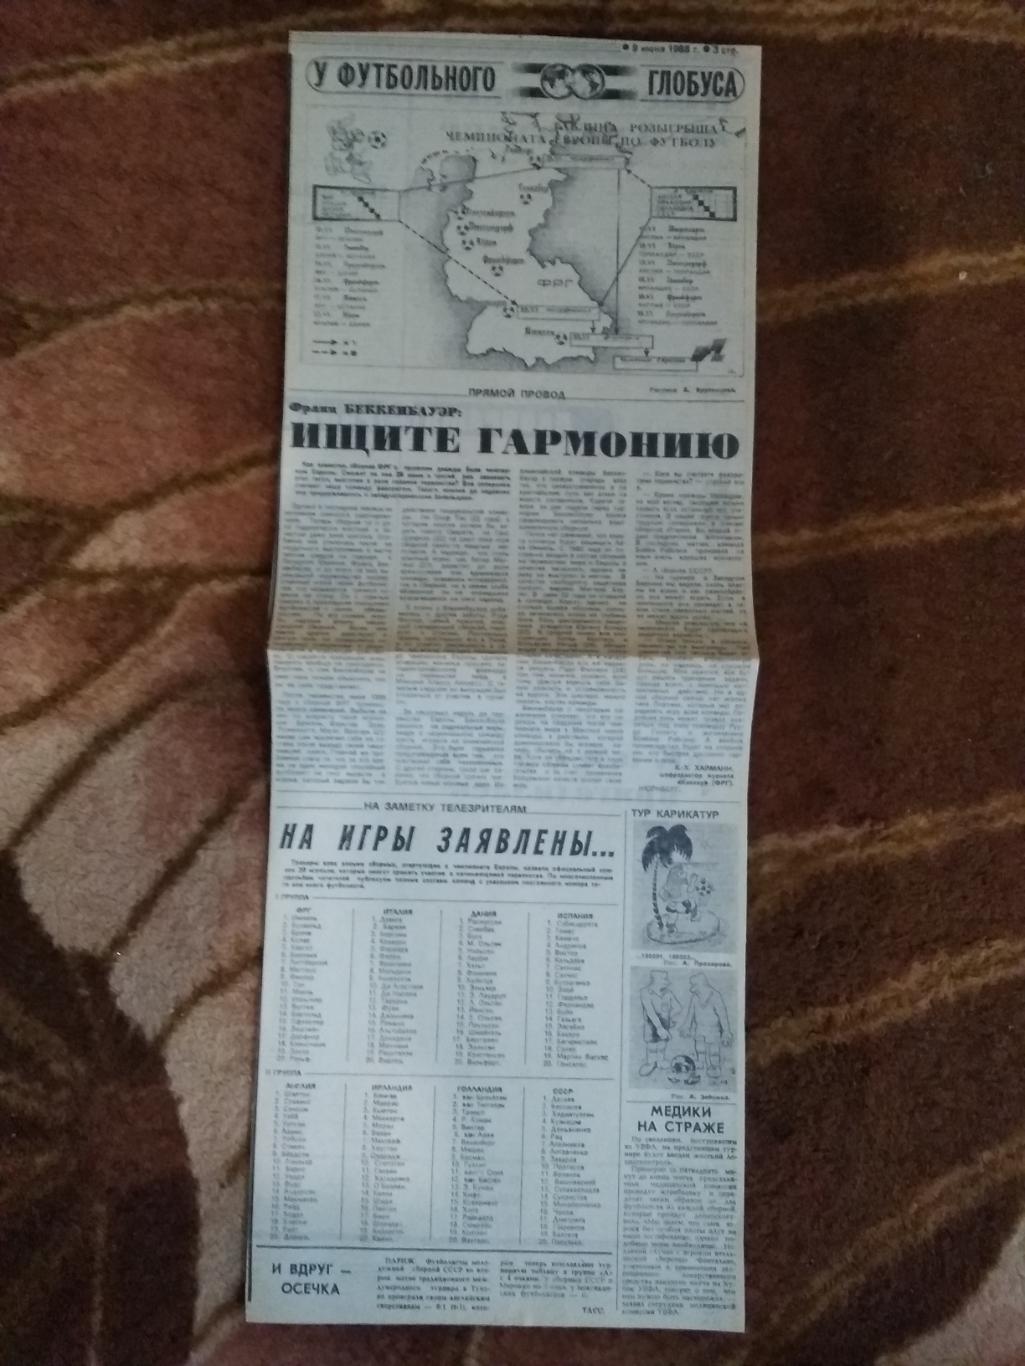 У футбольного глобуса 09.06.1988 г. Советский спорт. (ЧЕ 1988) (4).